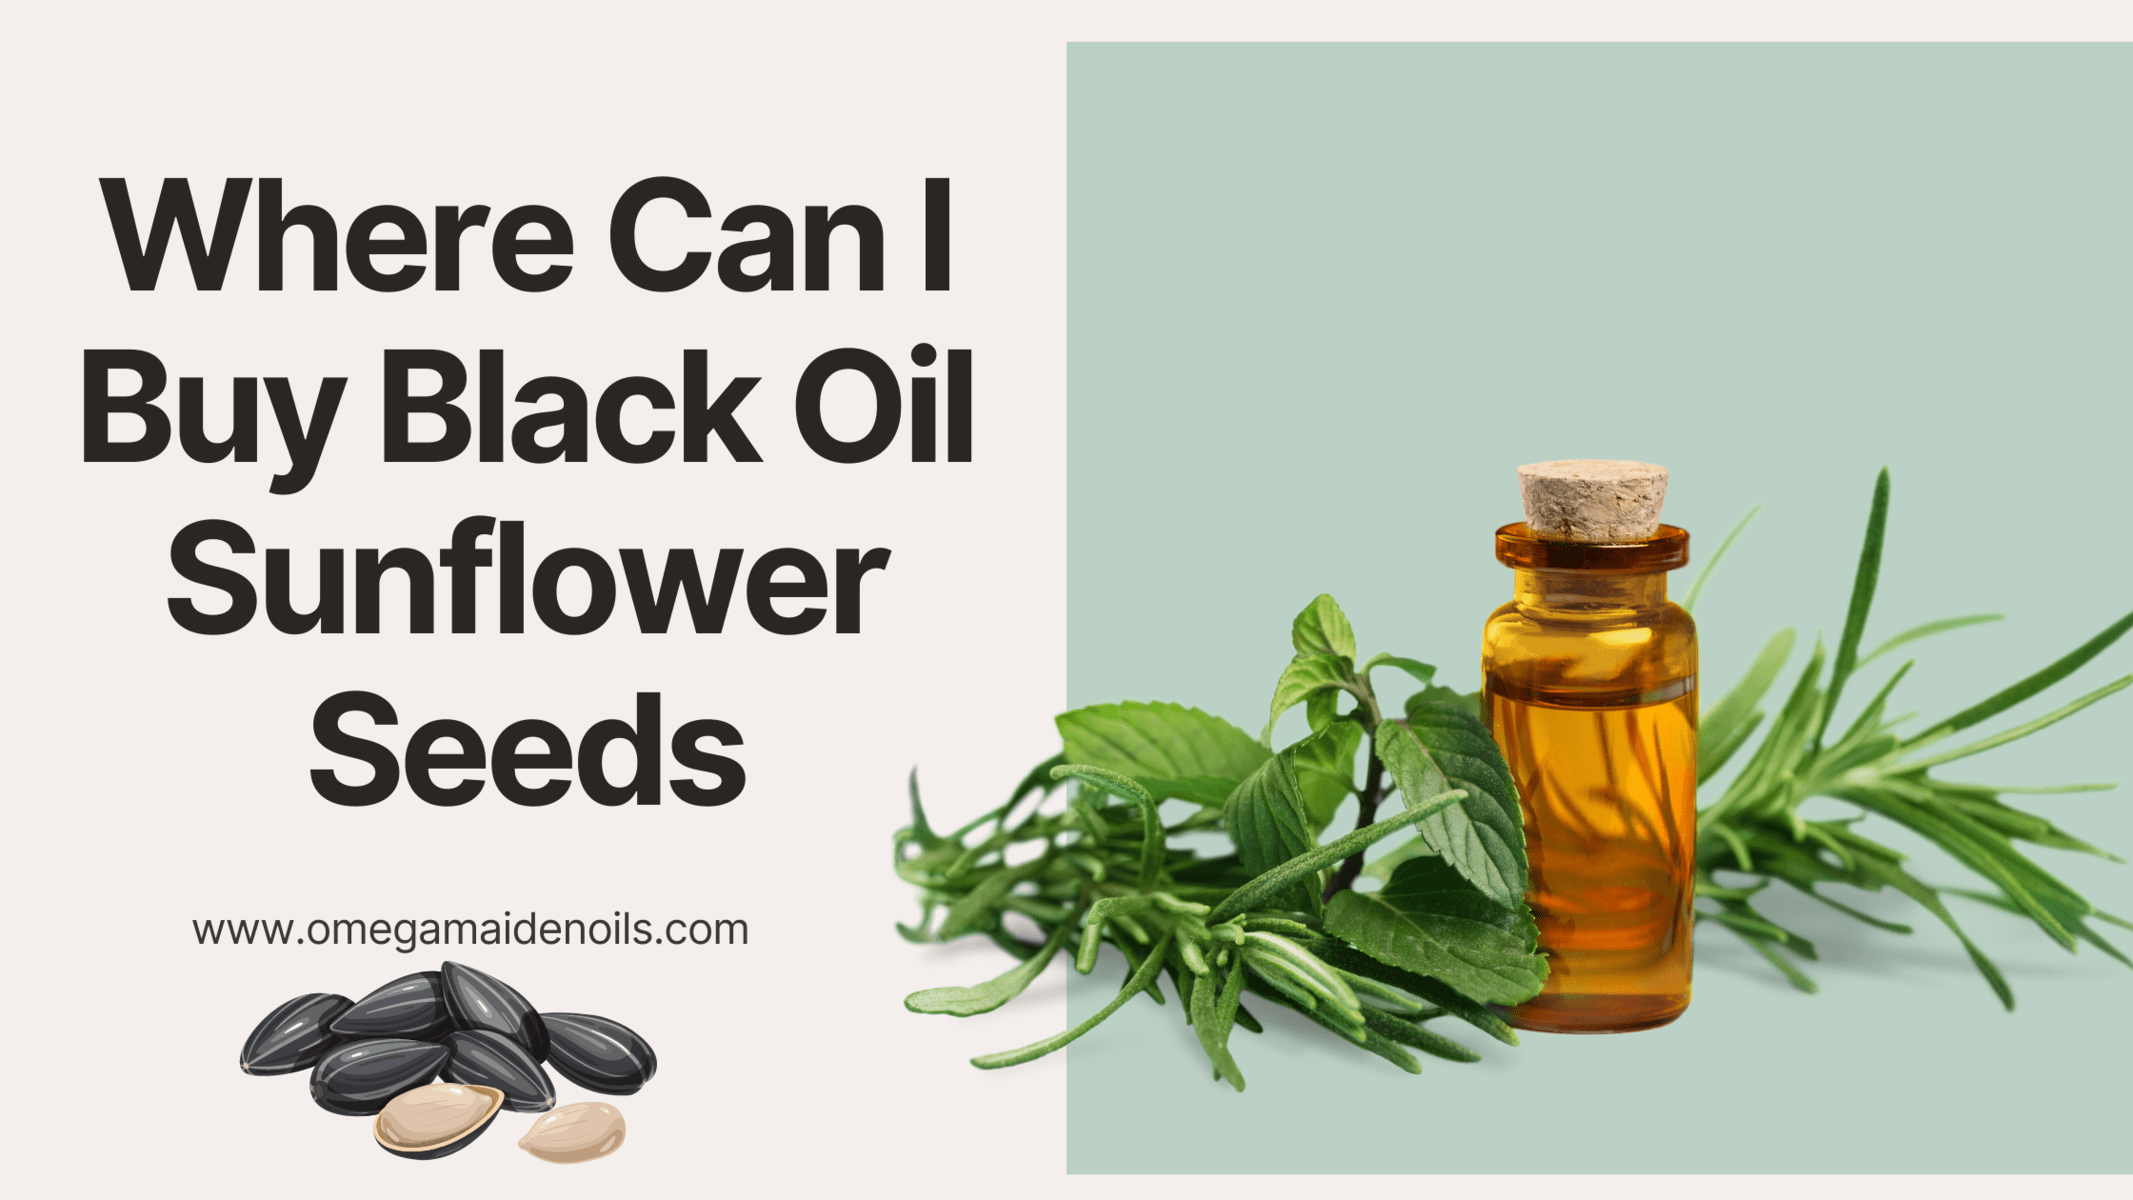 Where Can I Buy Black Oil Sunflower Seeds